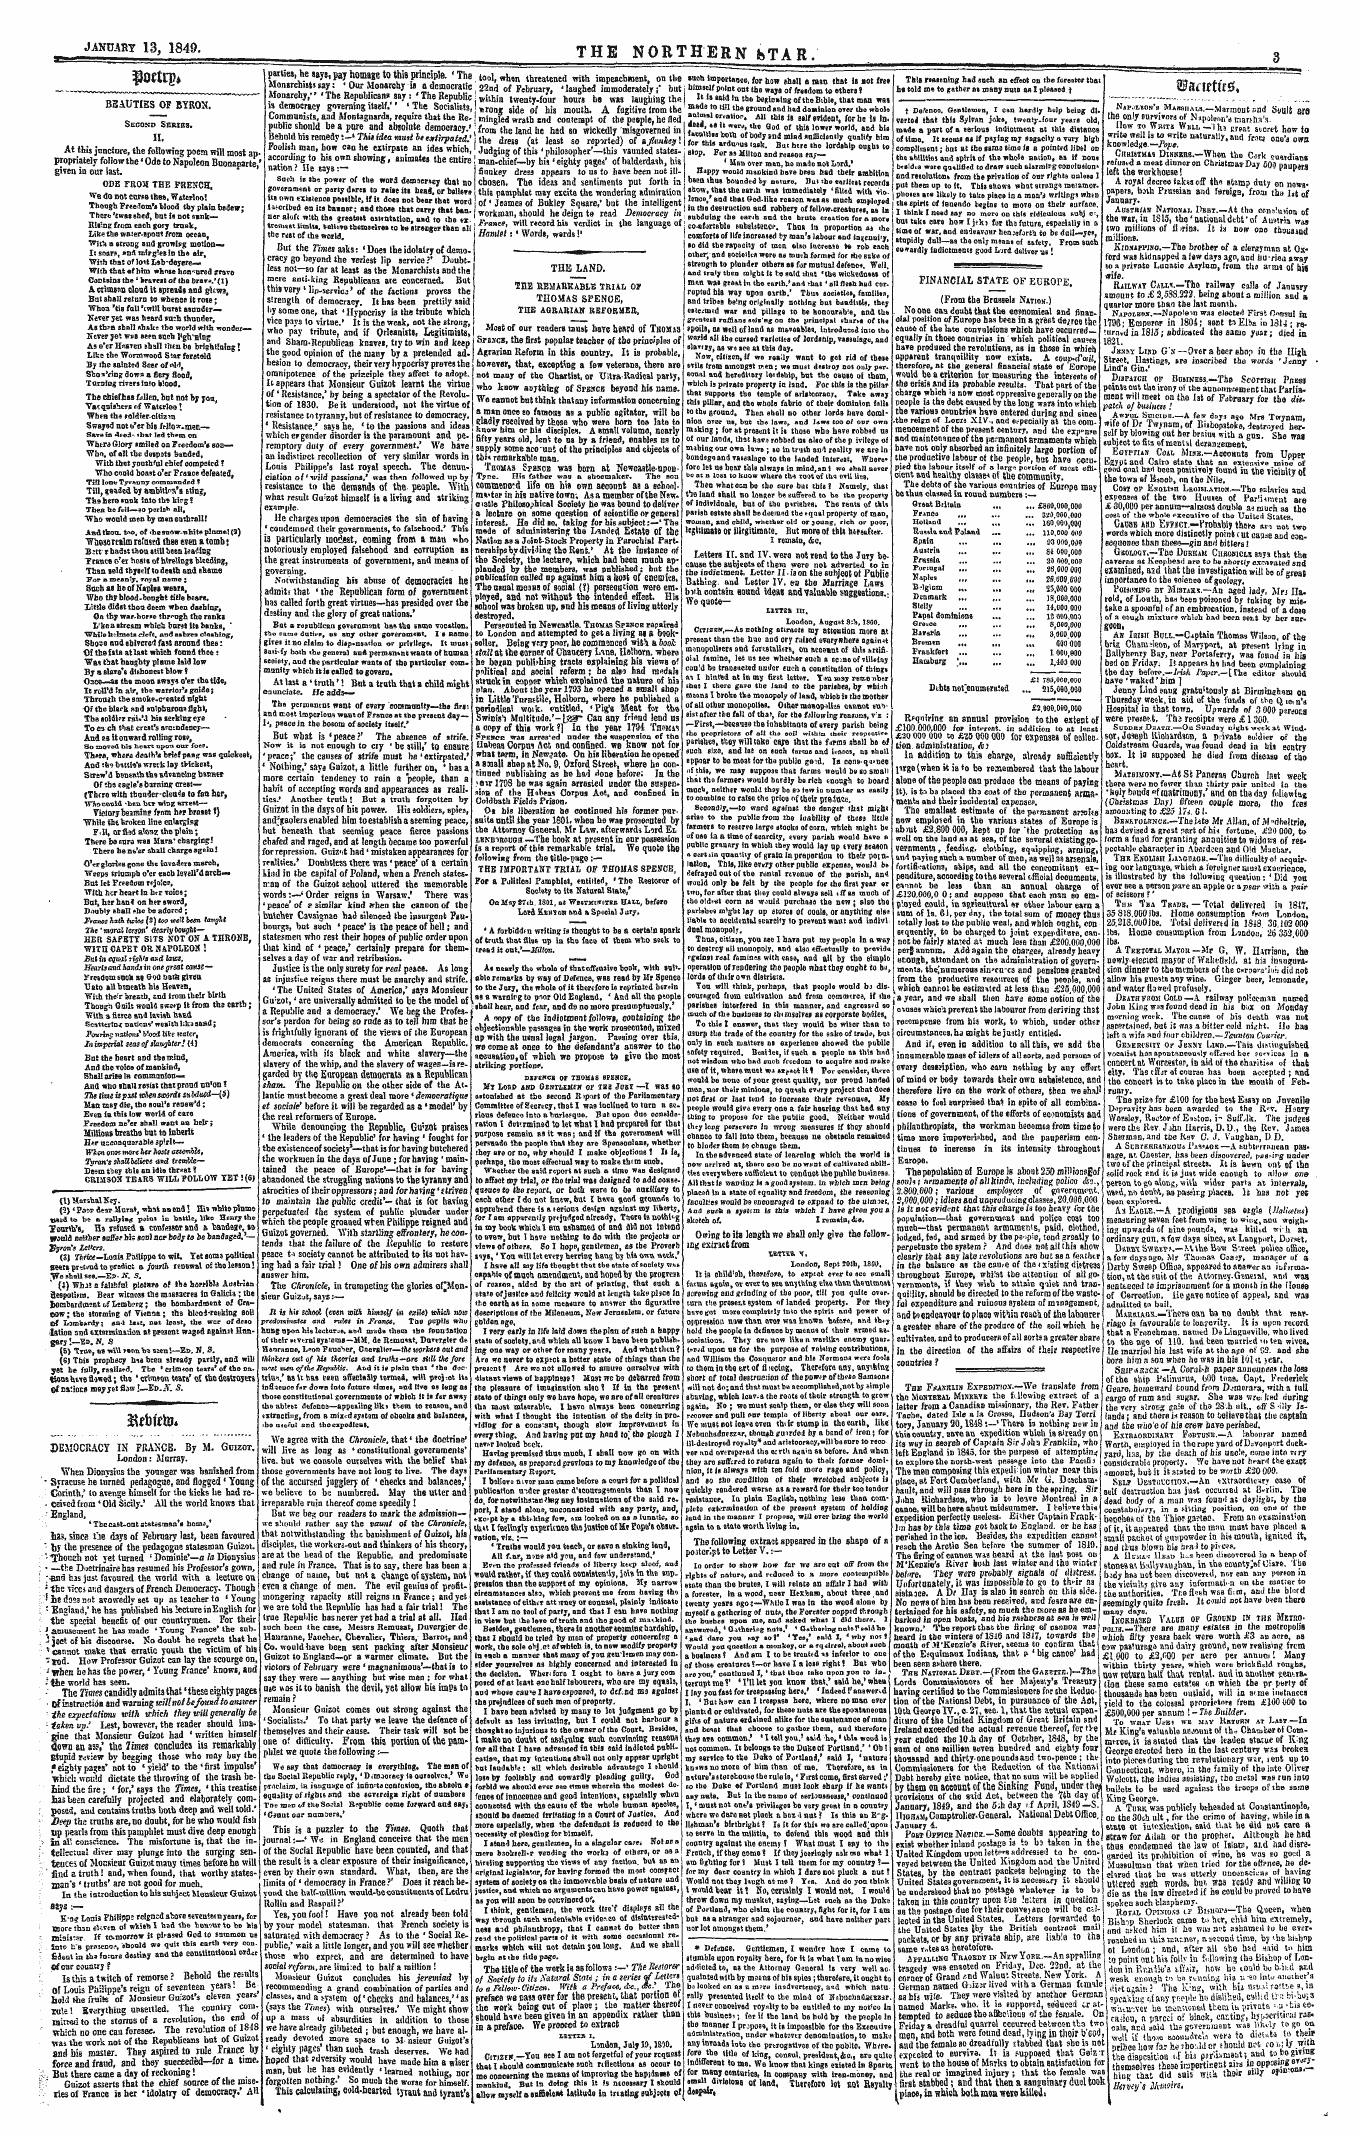 Northern Star (1837-1852): jS F Y, 3rd edition - Wmttu$A